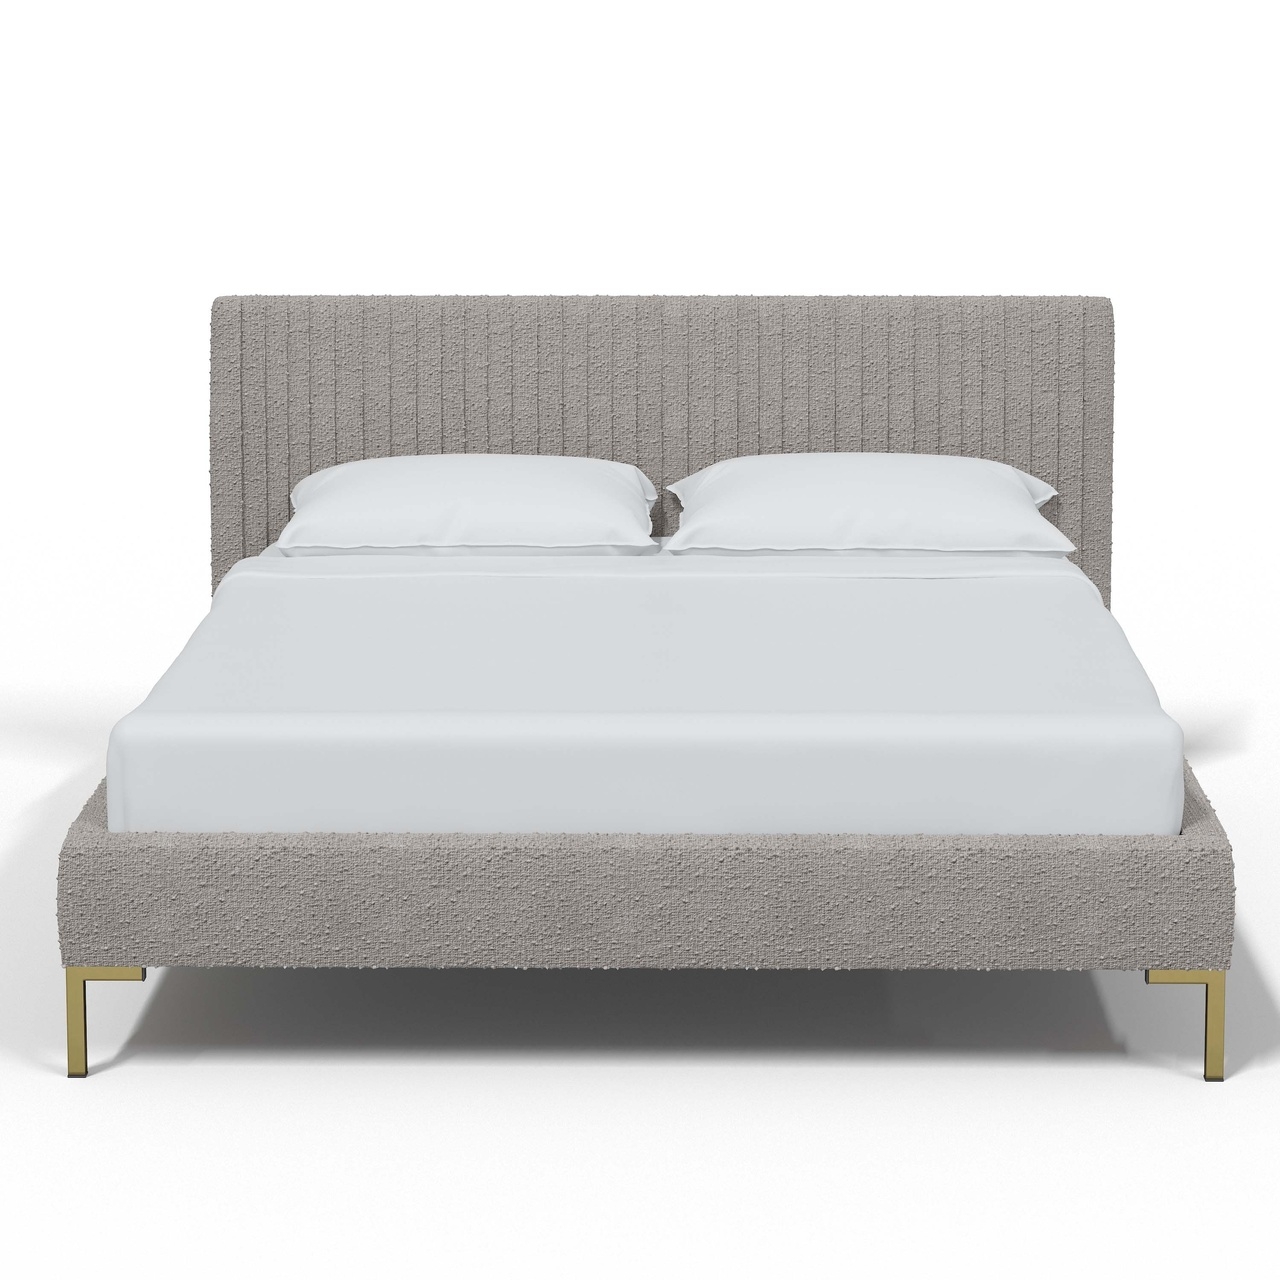 King Nicolet Platform Bed - Image 1